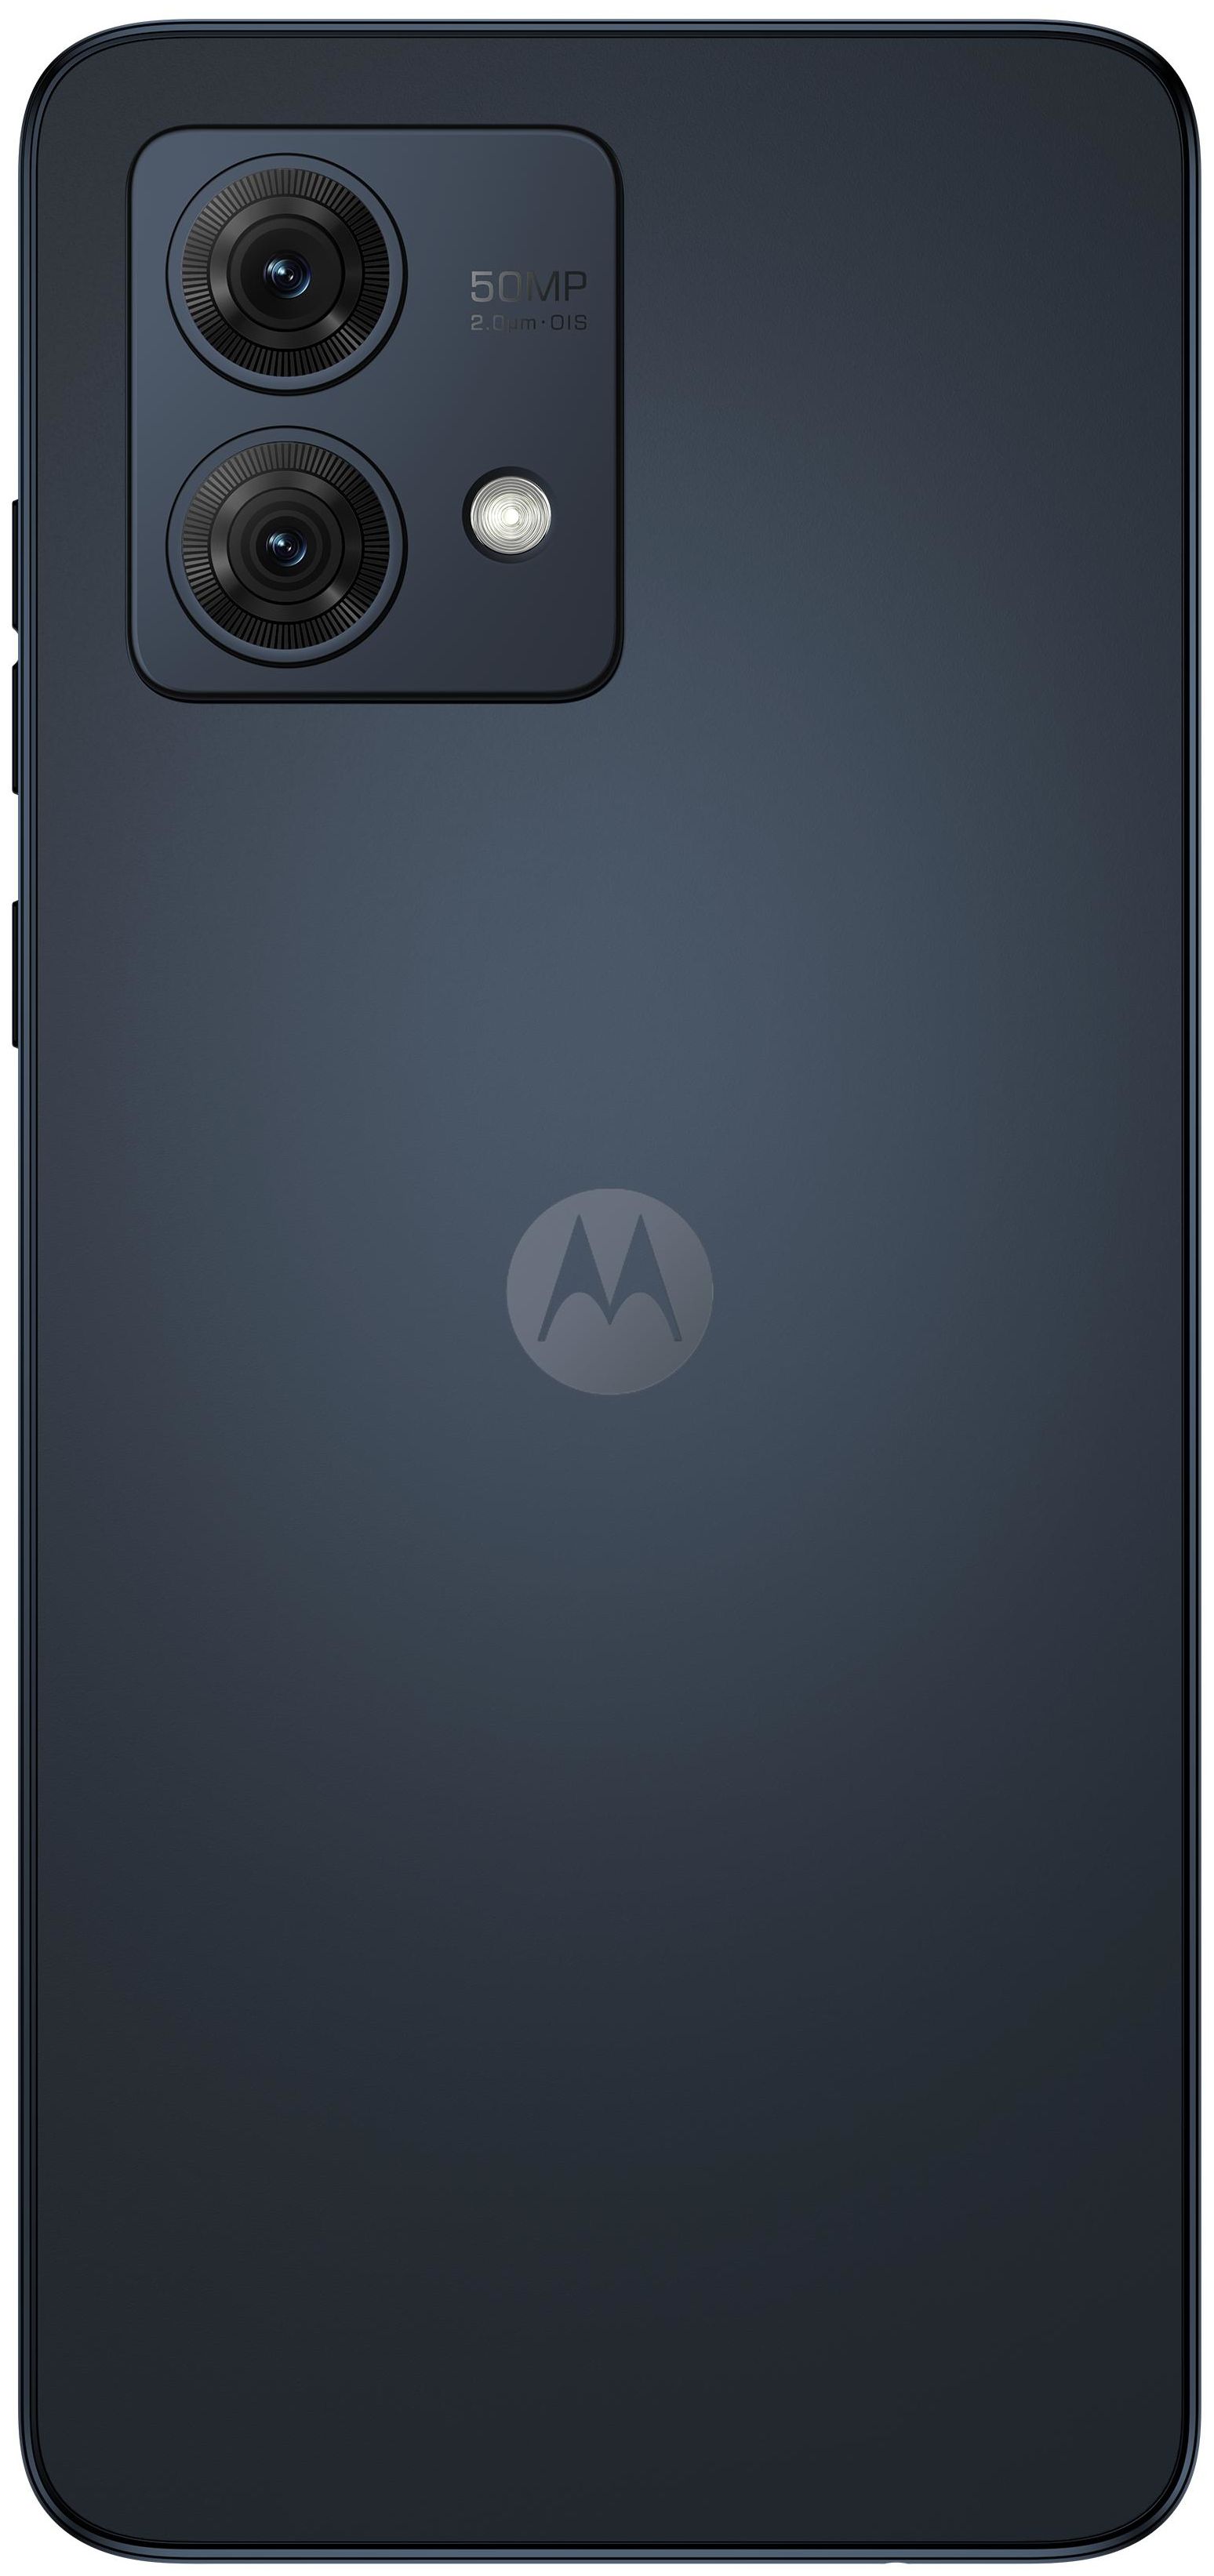 16,6 G84 Zoll) Kamera expert GHz (6.5 GB Smartphone Motorola 256 2,2 cm MP Android Technomarkt Sim Blue) Dual von Moto (Midnight Dual 5G 50